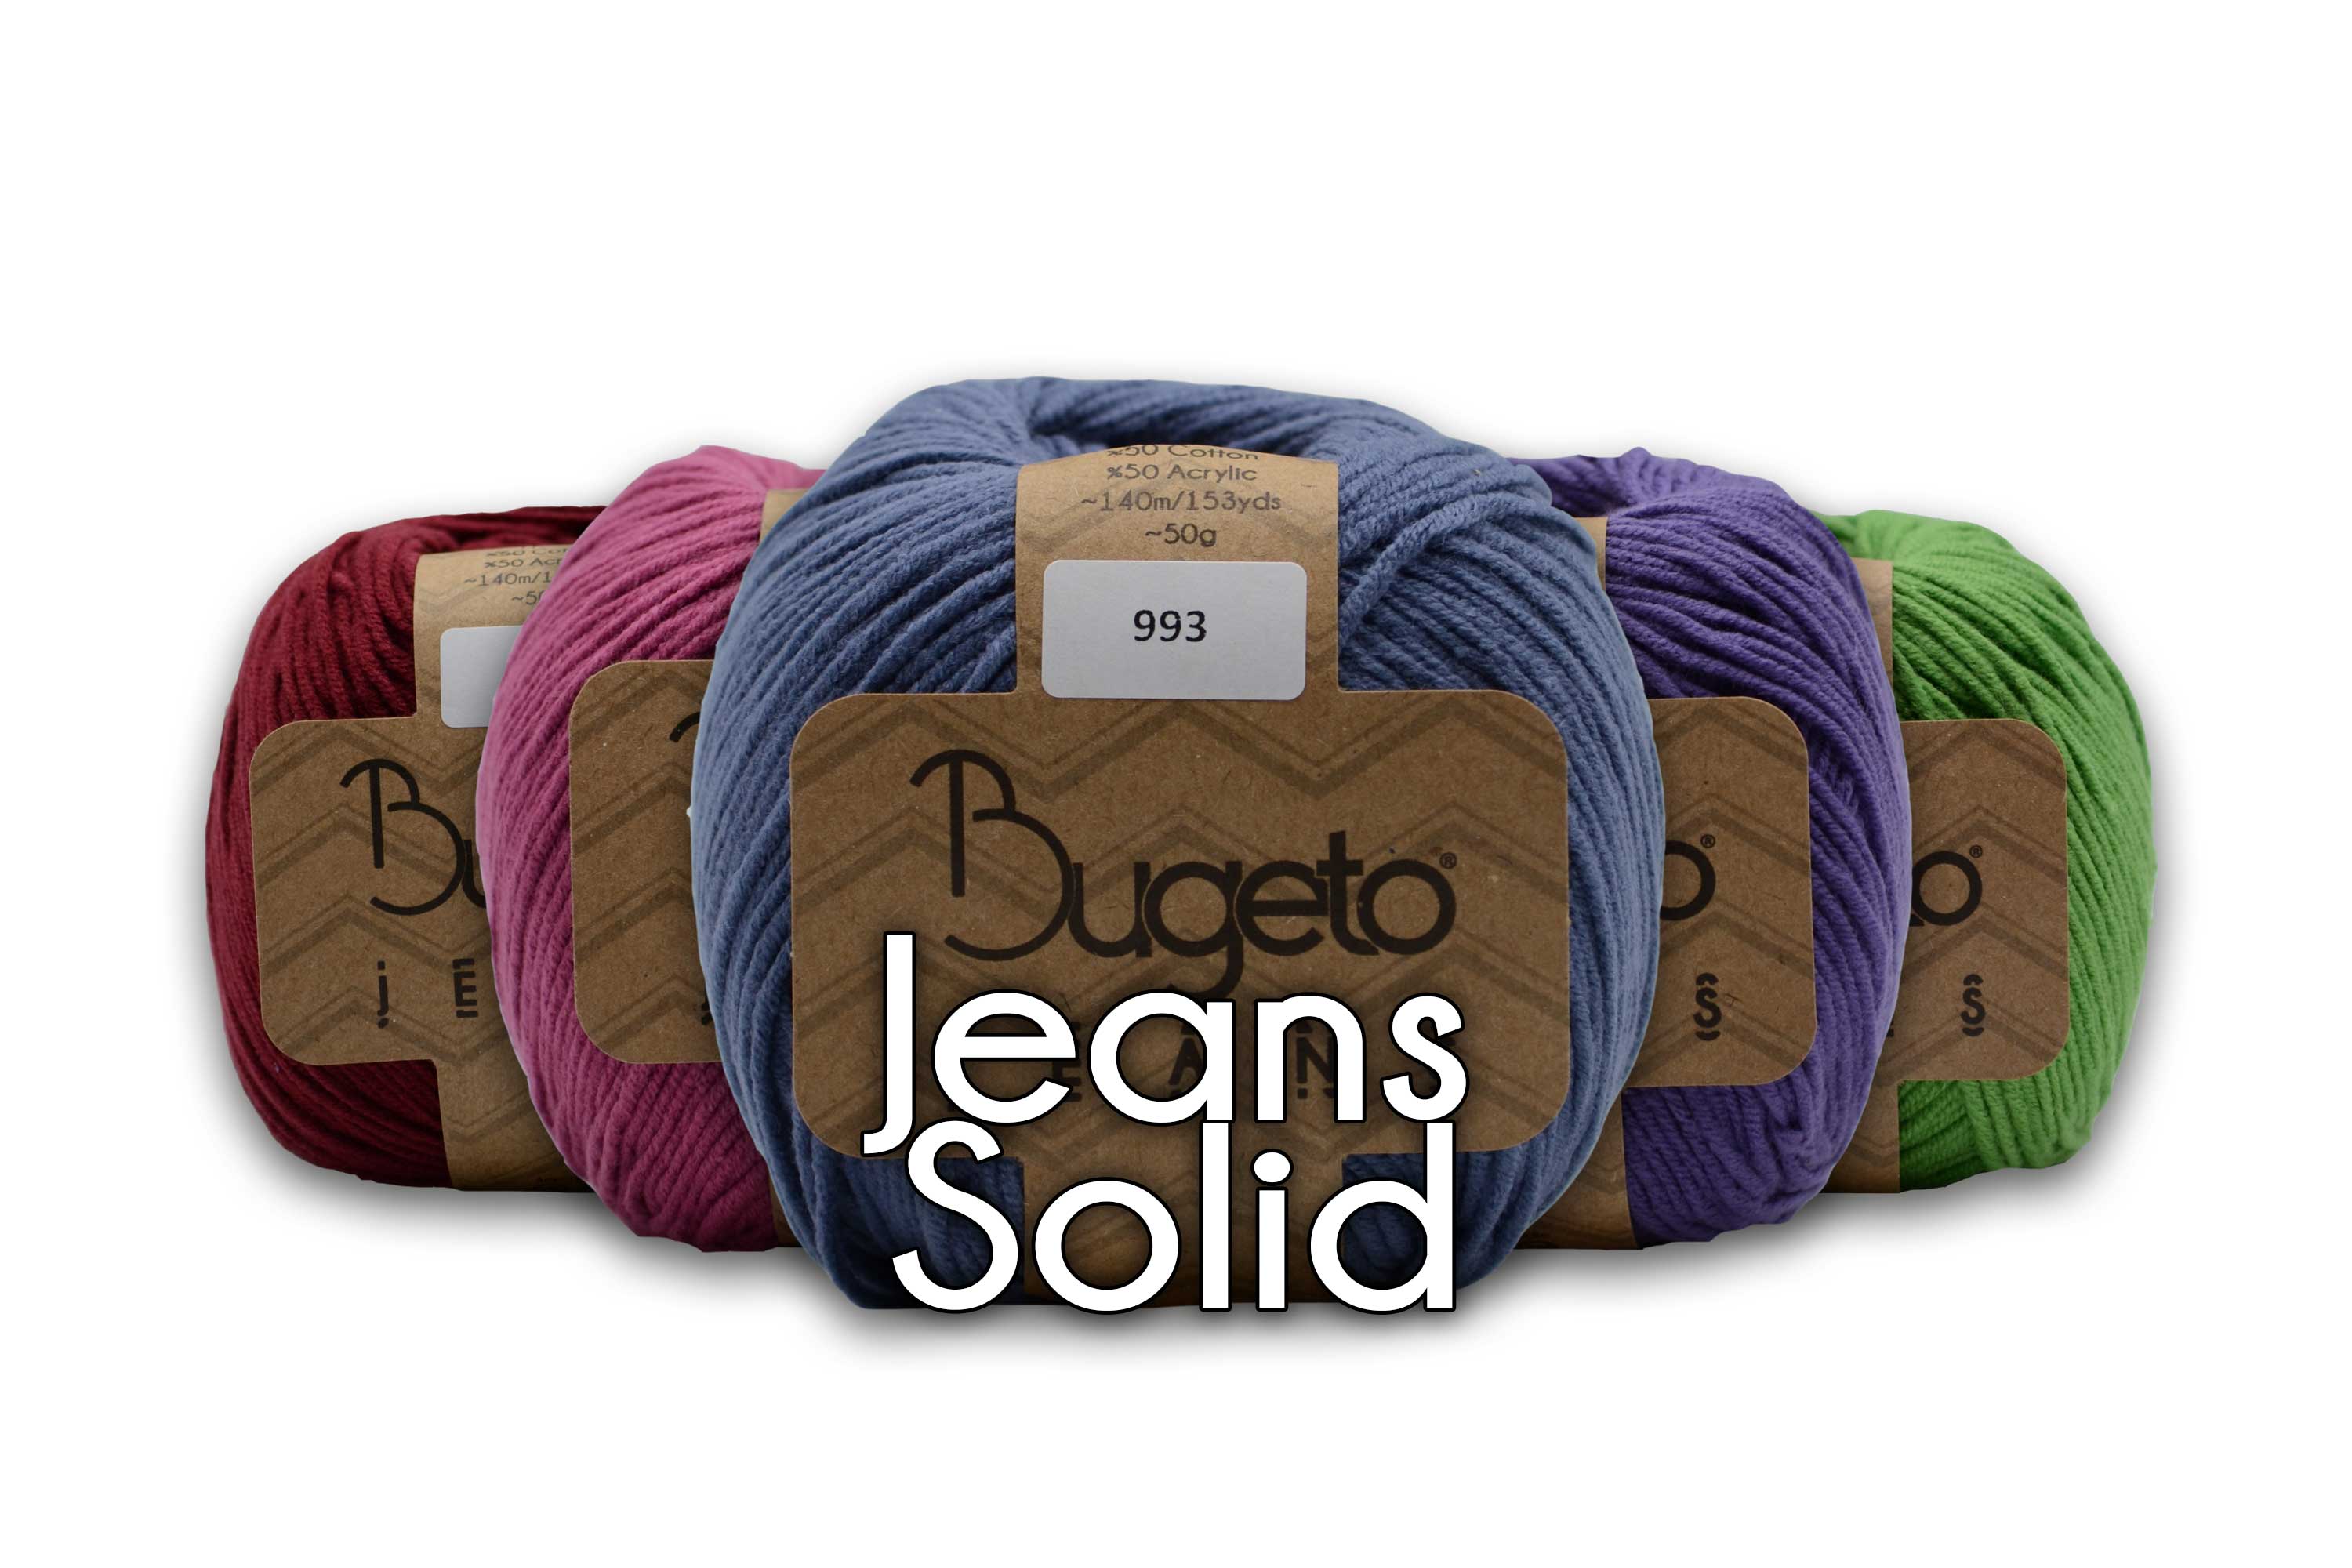 fancy yarn premium acrylic yarn Bugeto yarn winter yarn soft thick yarn acrylic cotton yarn jean yarn bugeto